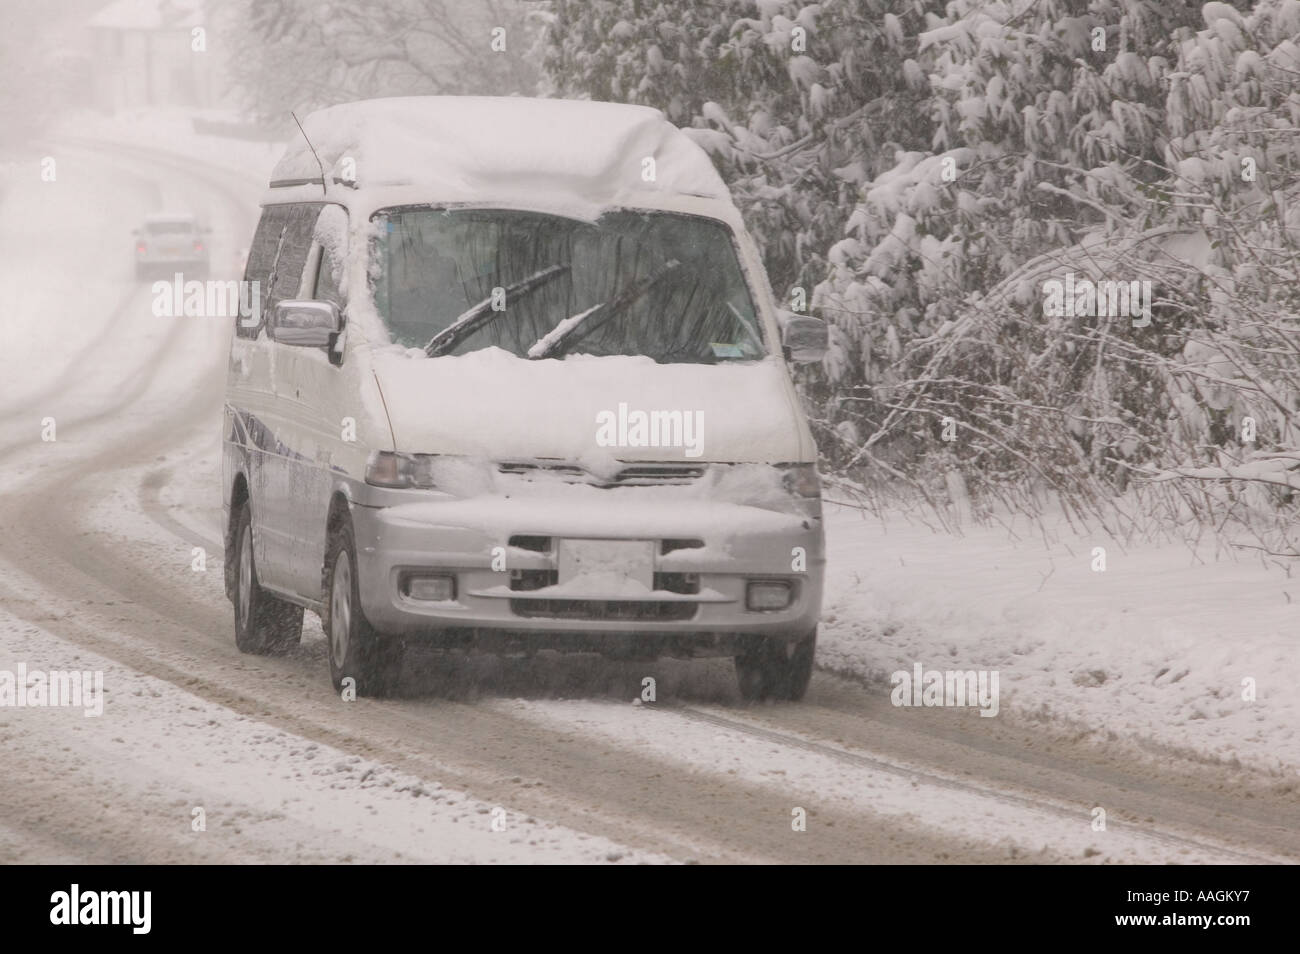 Une voiture mal par routes enneigées à Ambleside durant un hiver neige, Lake district, UK Banque D'Images